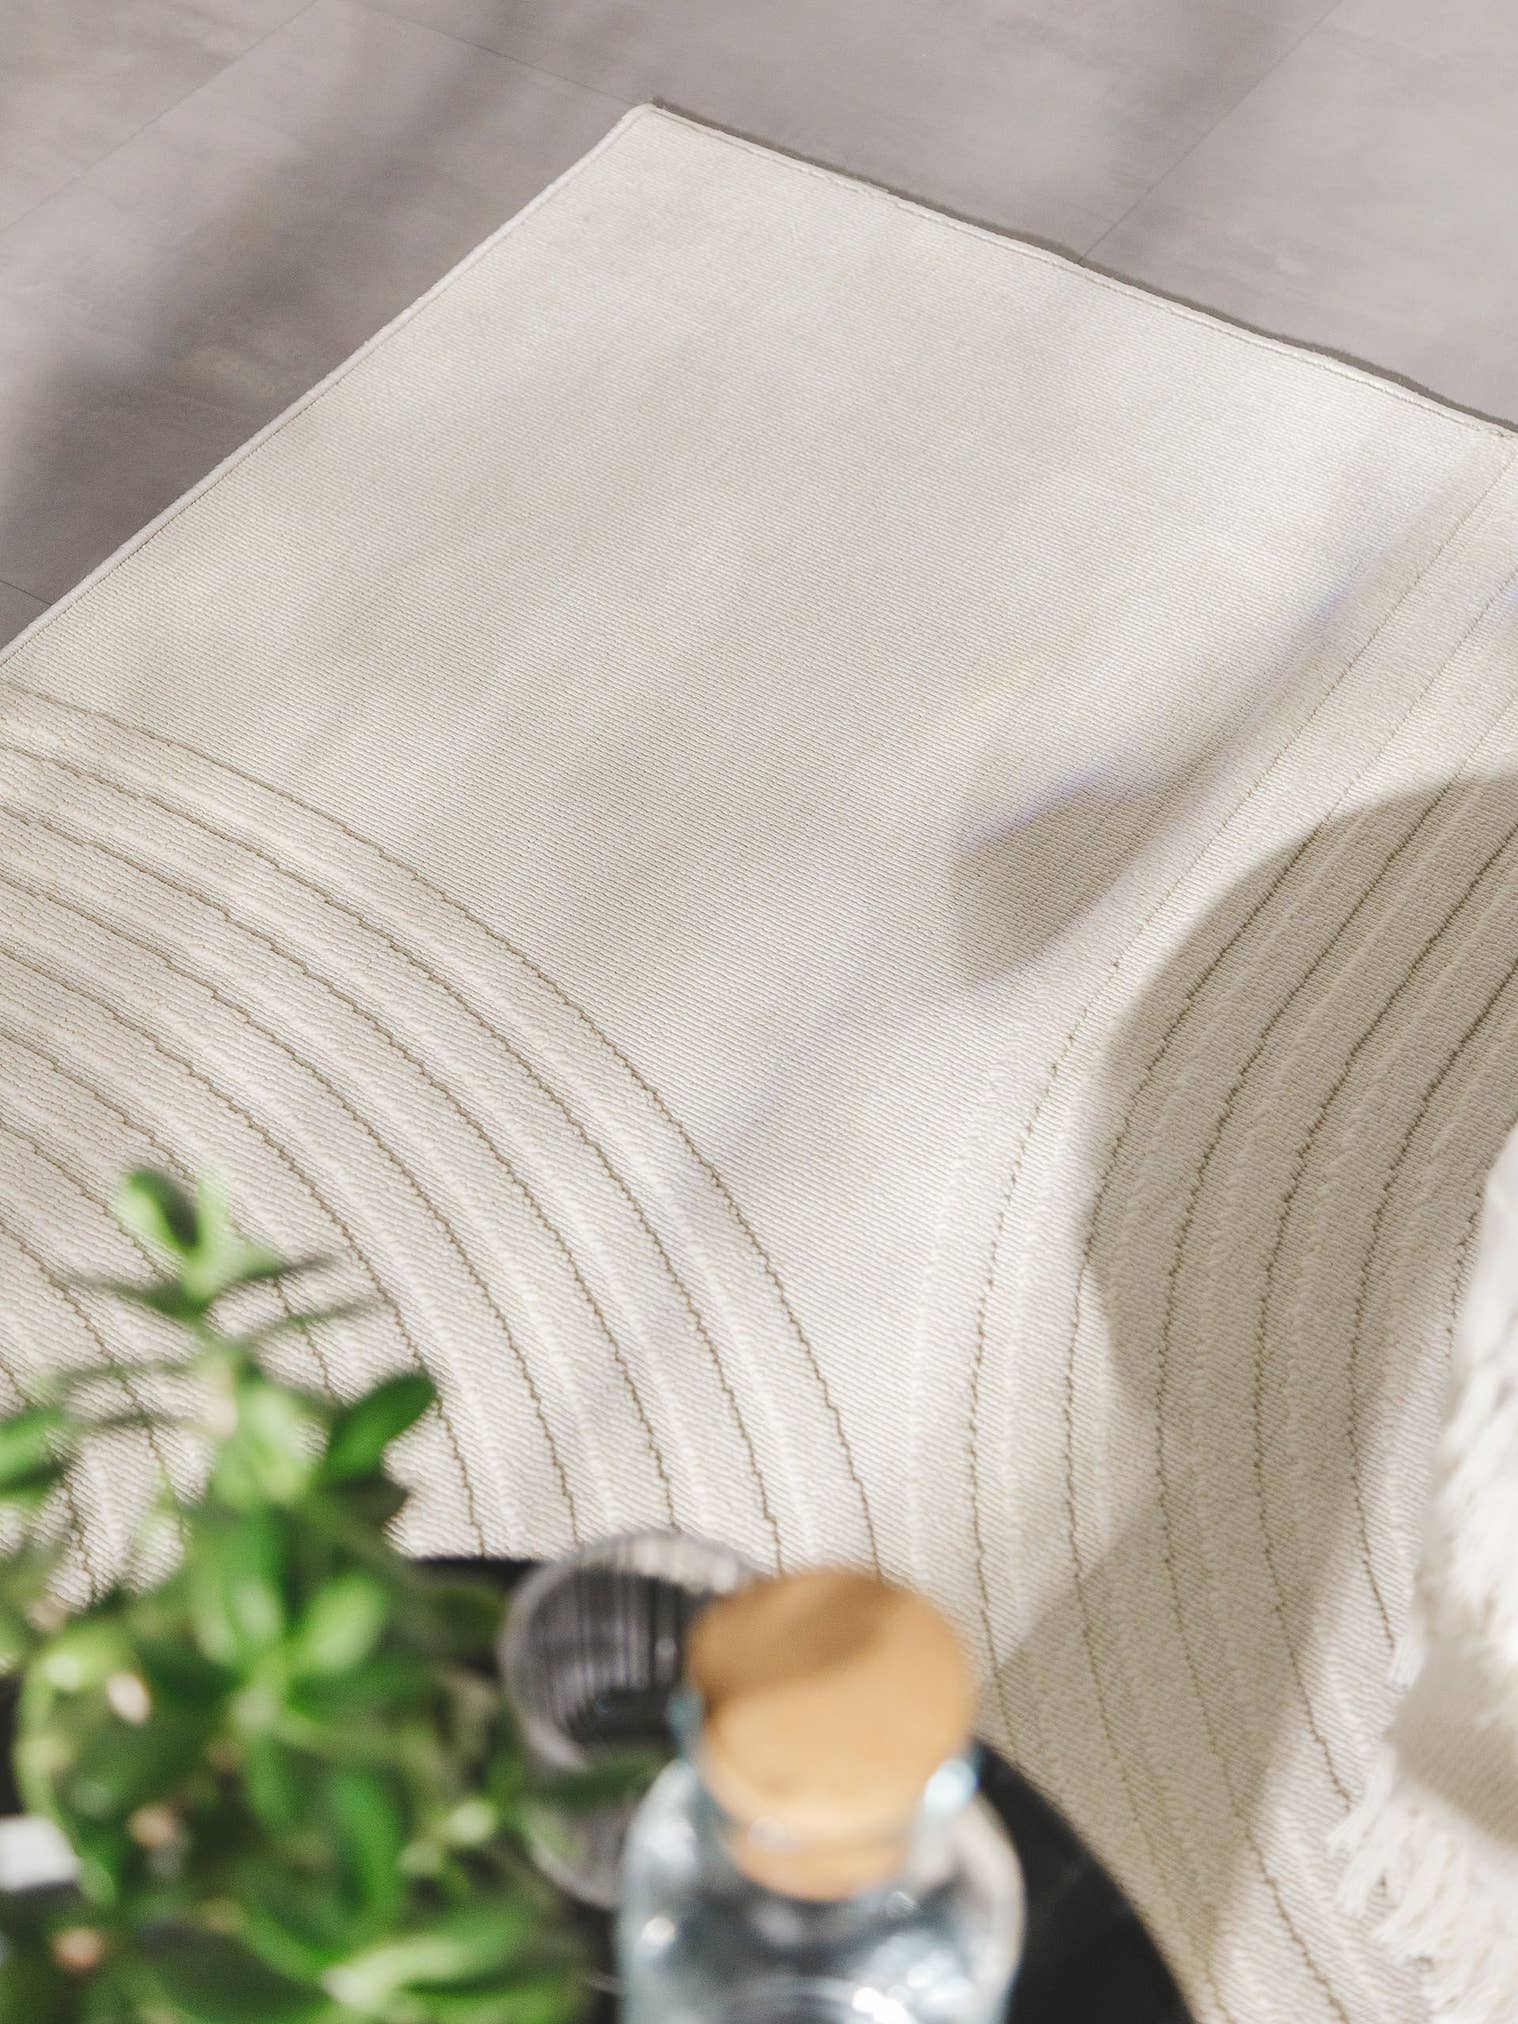 Teppich aus 100% Polypropylen in Weiß mit bis 5 mm hohem Flor von benuta Pop